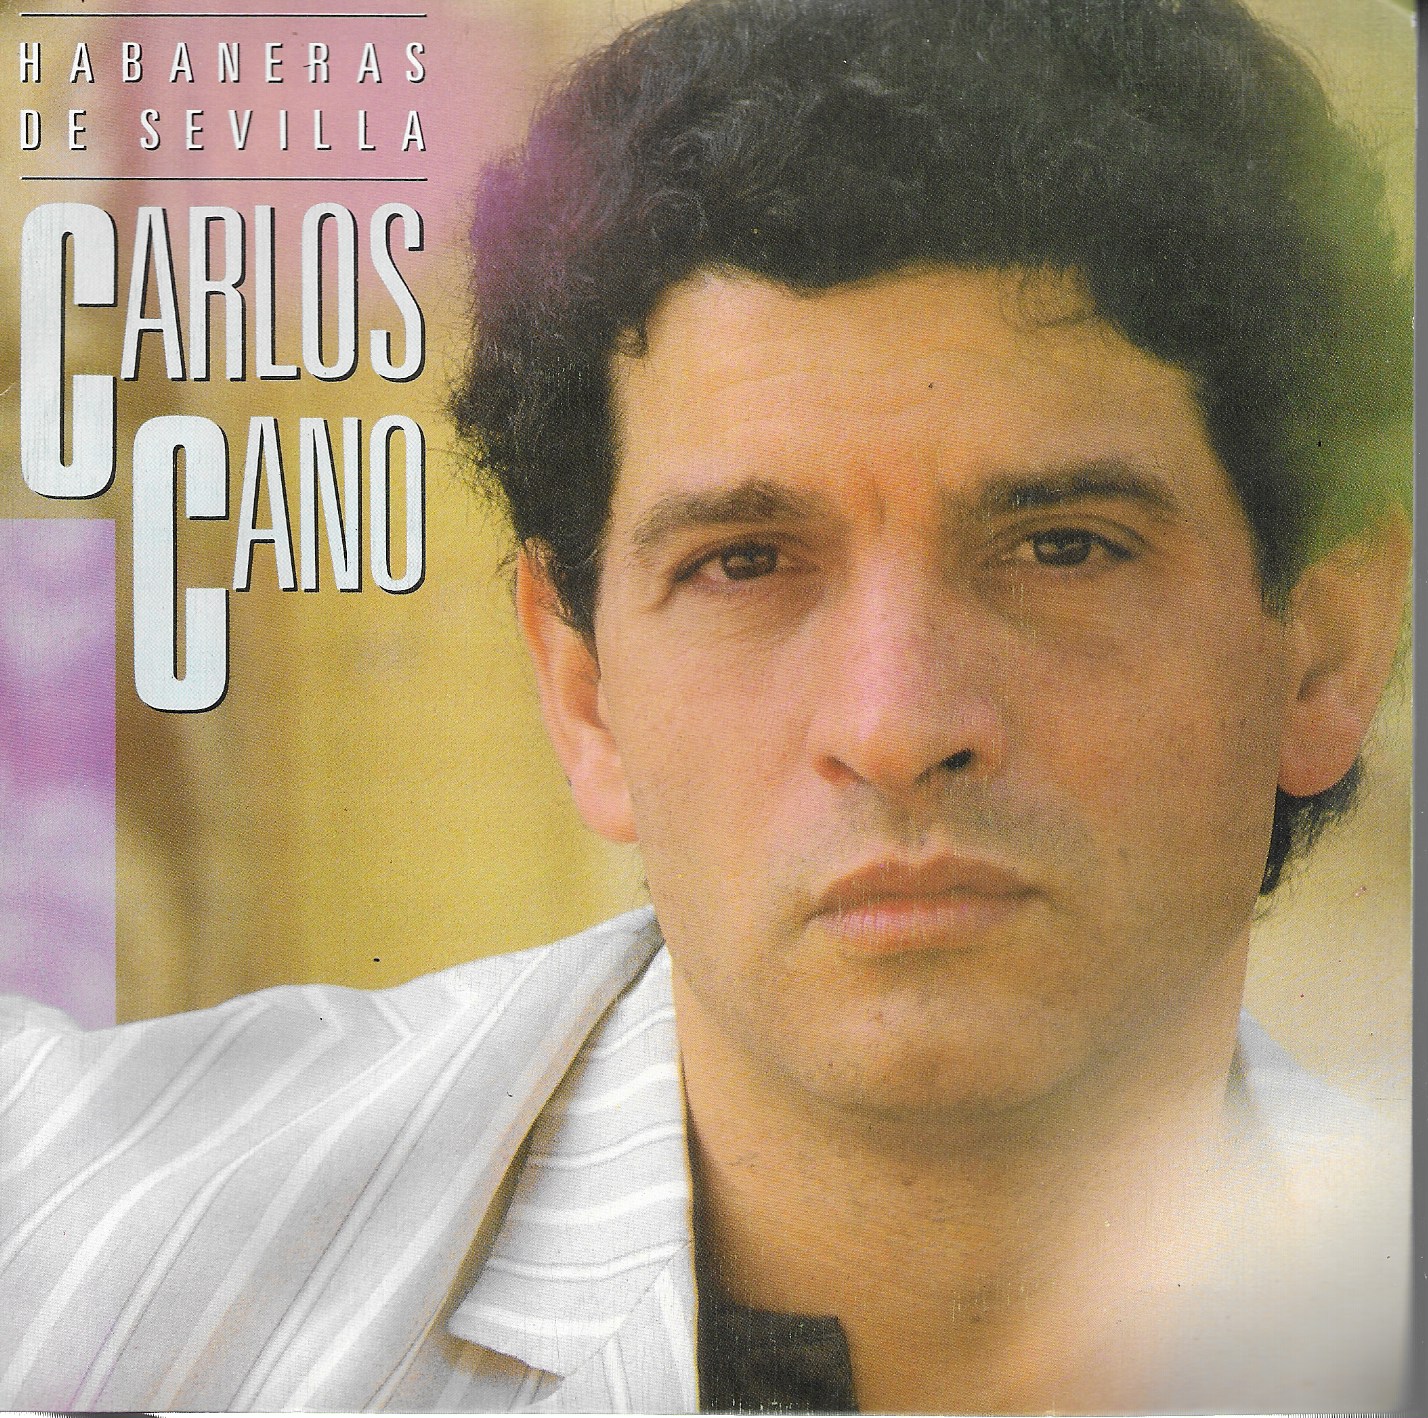 Carlos Cano. CBS 1987. 45RPM. Habaneras de Sevilla